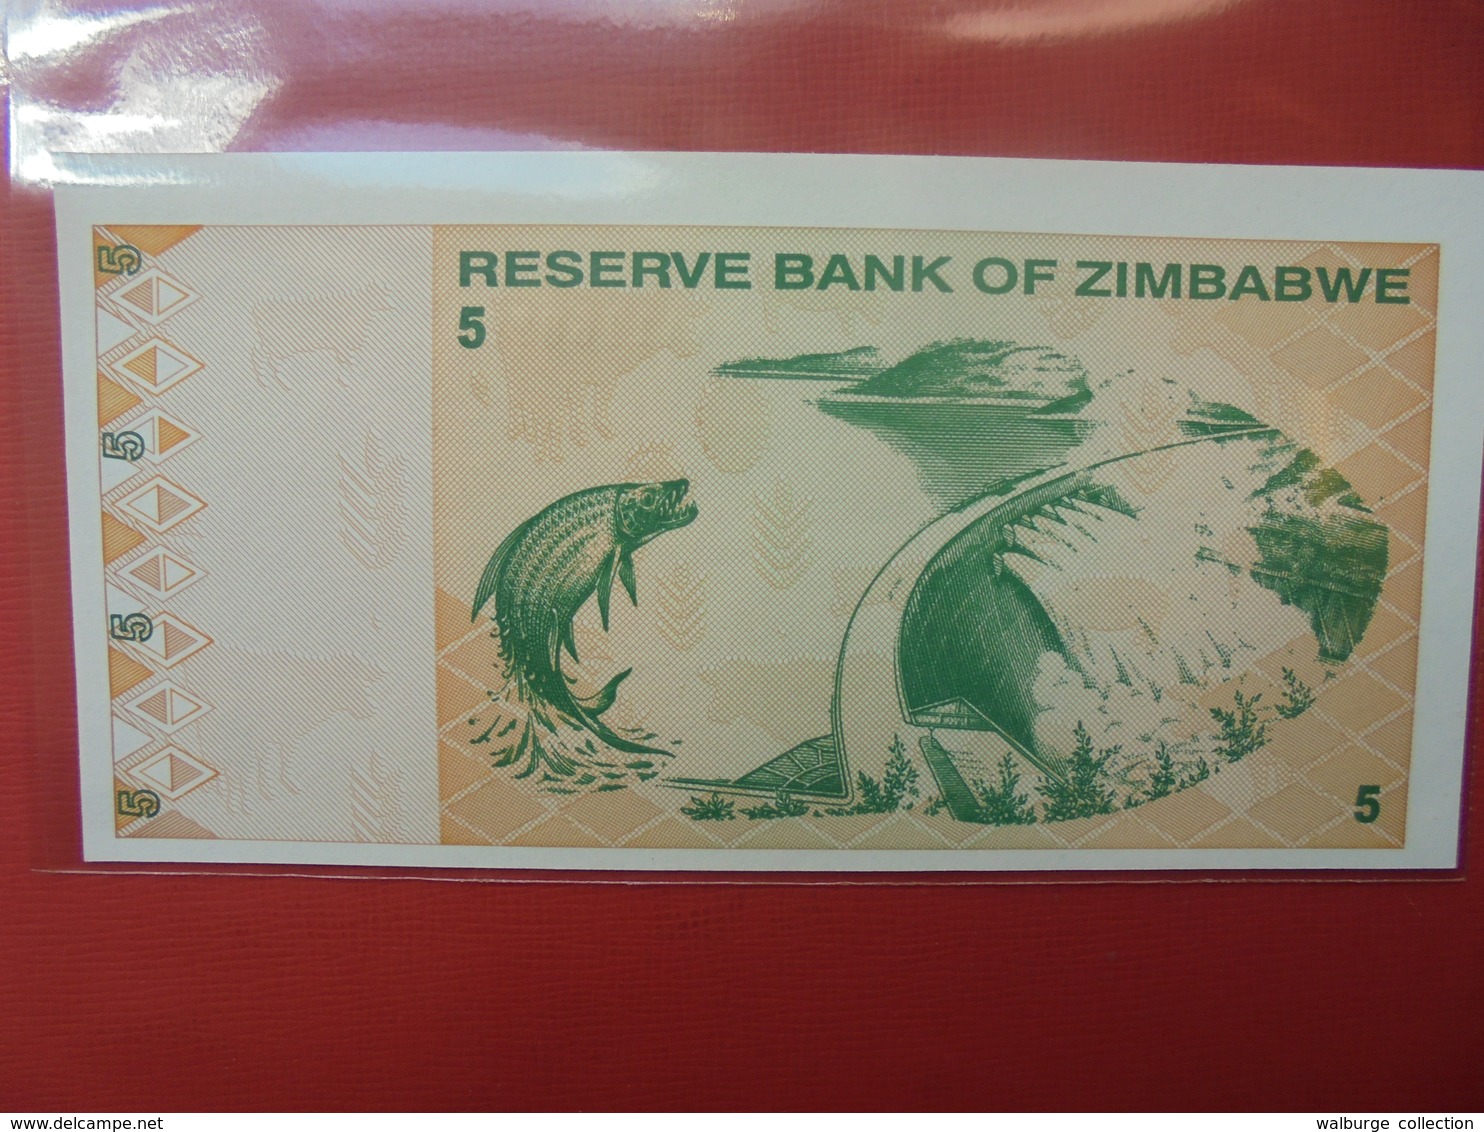 ZIMBABWE 5$ 2009 PEU CIRCULER/NEUF - Zimbabwe